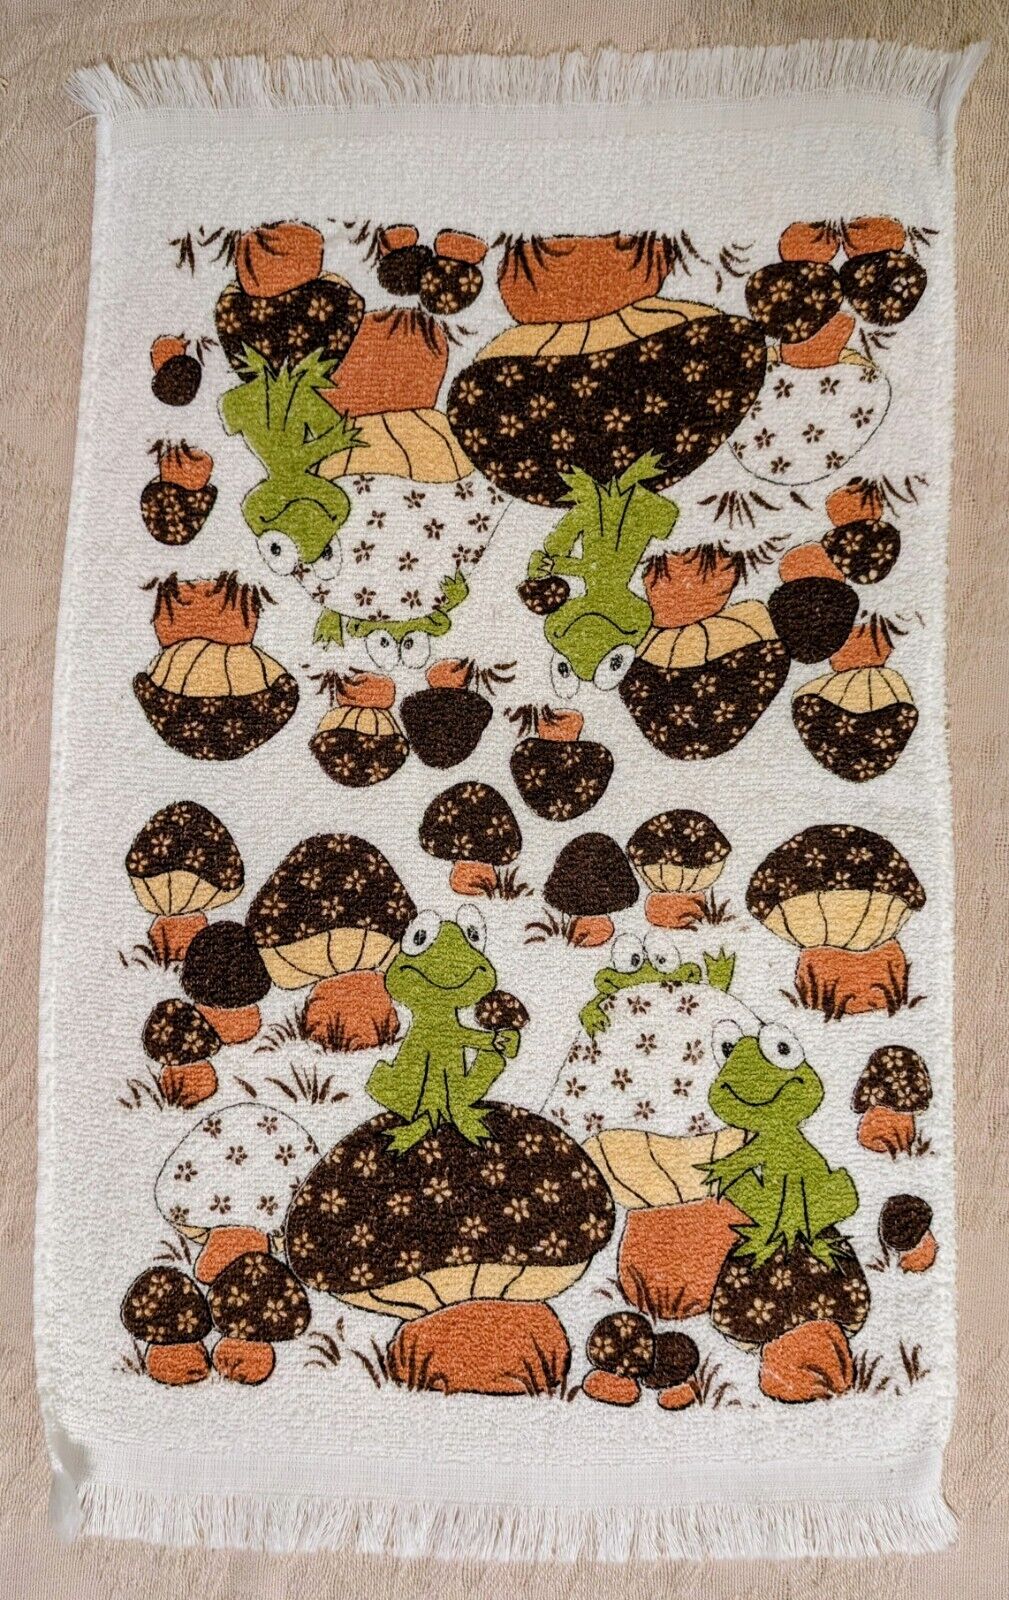 1970s Mushroom & Smiley Frog Kitchen Terry Hand Towel Retro Fringe Flower VTG